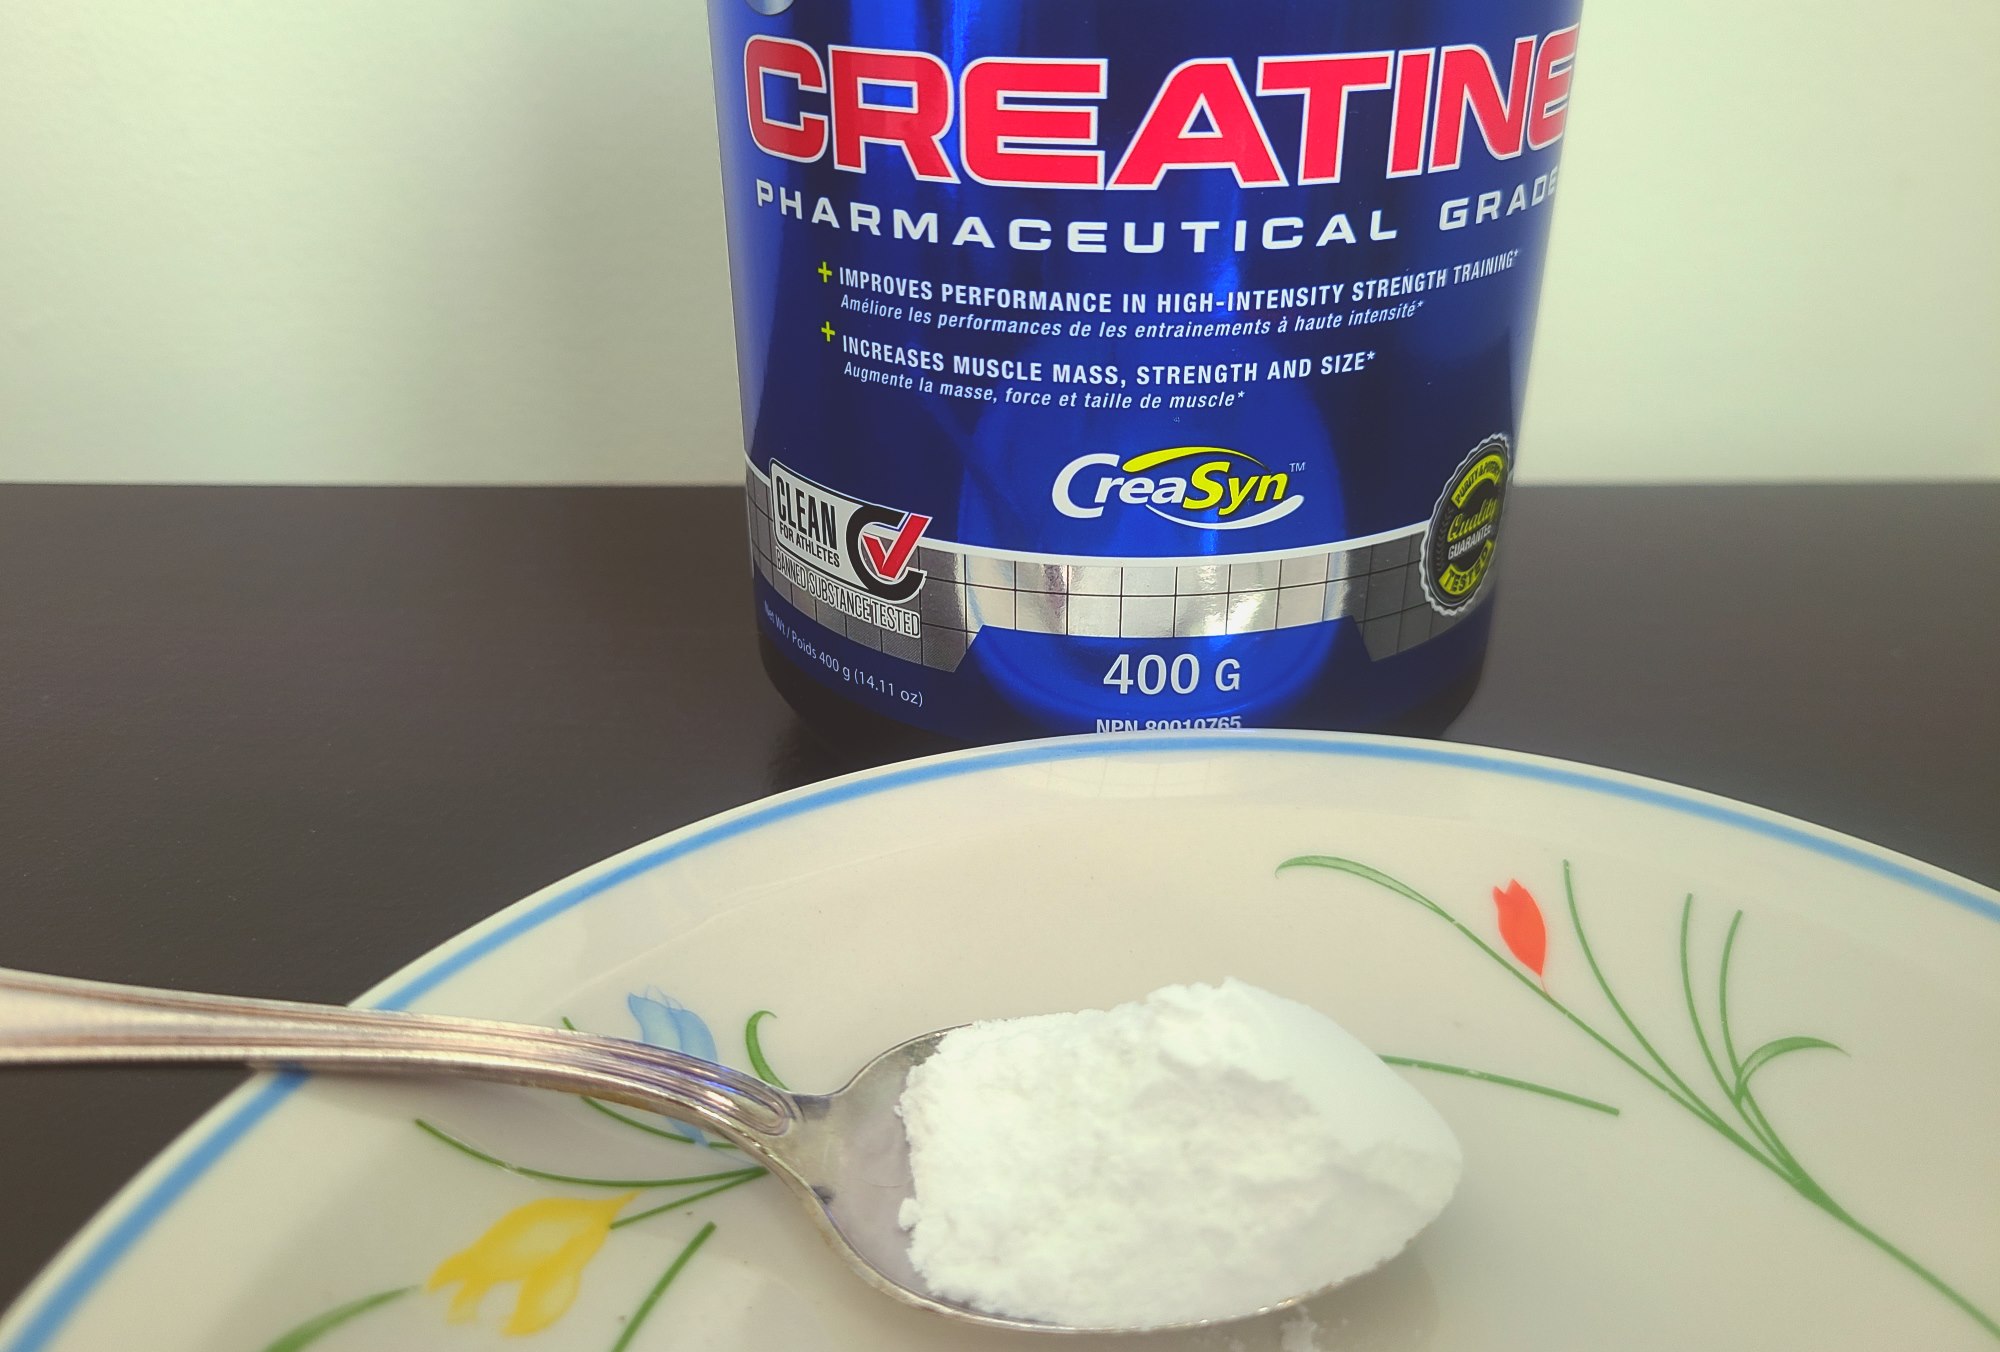 A creatine powder supplement